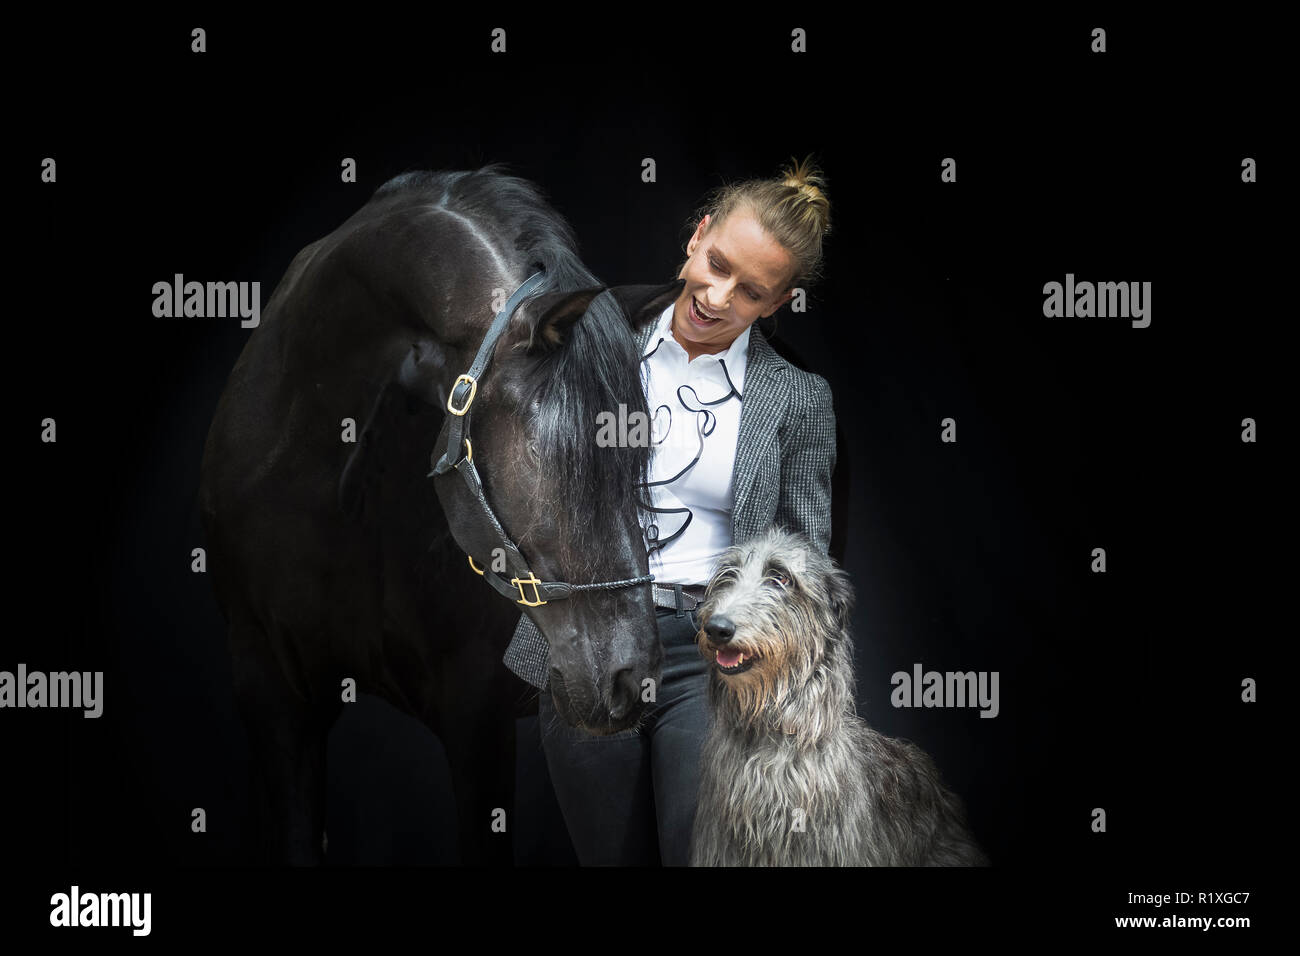 Reine Spanische Pferd, Andalusische. Schwarze Wallach mit Inhaber und der Irish Wolfhound, auf einem schwarzen Hintergrund gesehen. Deutschland Stockfoto